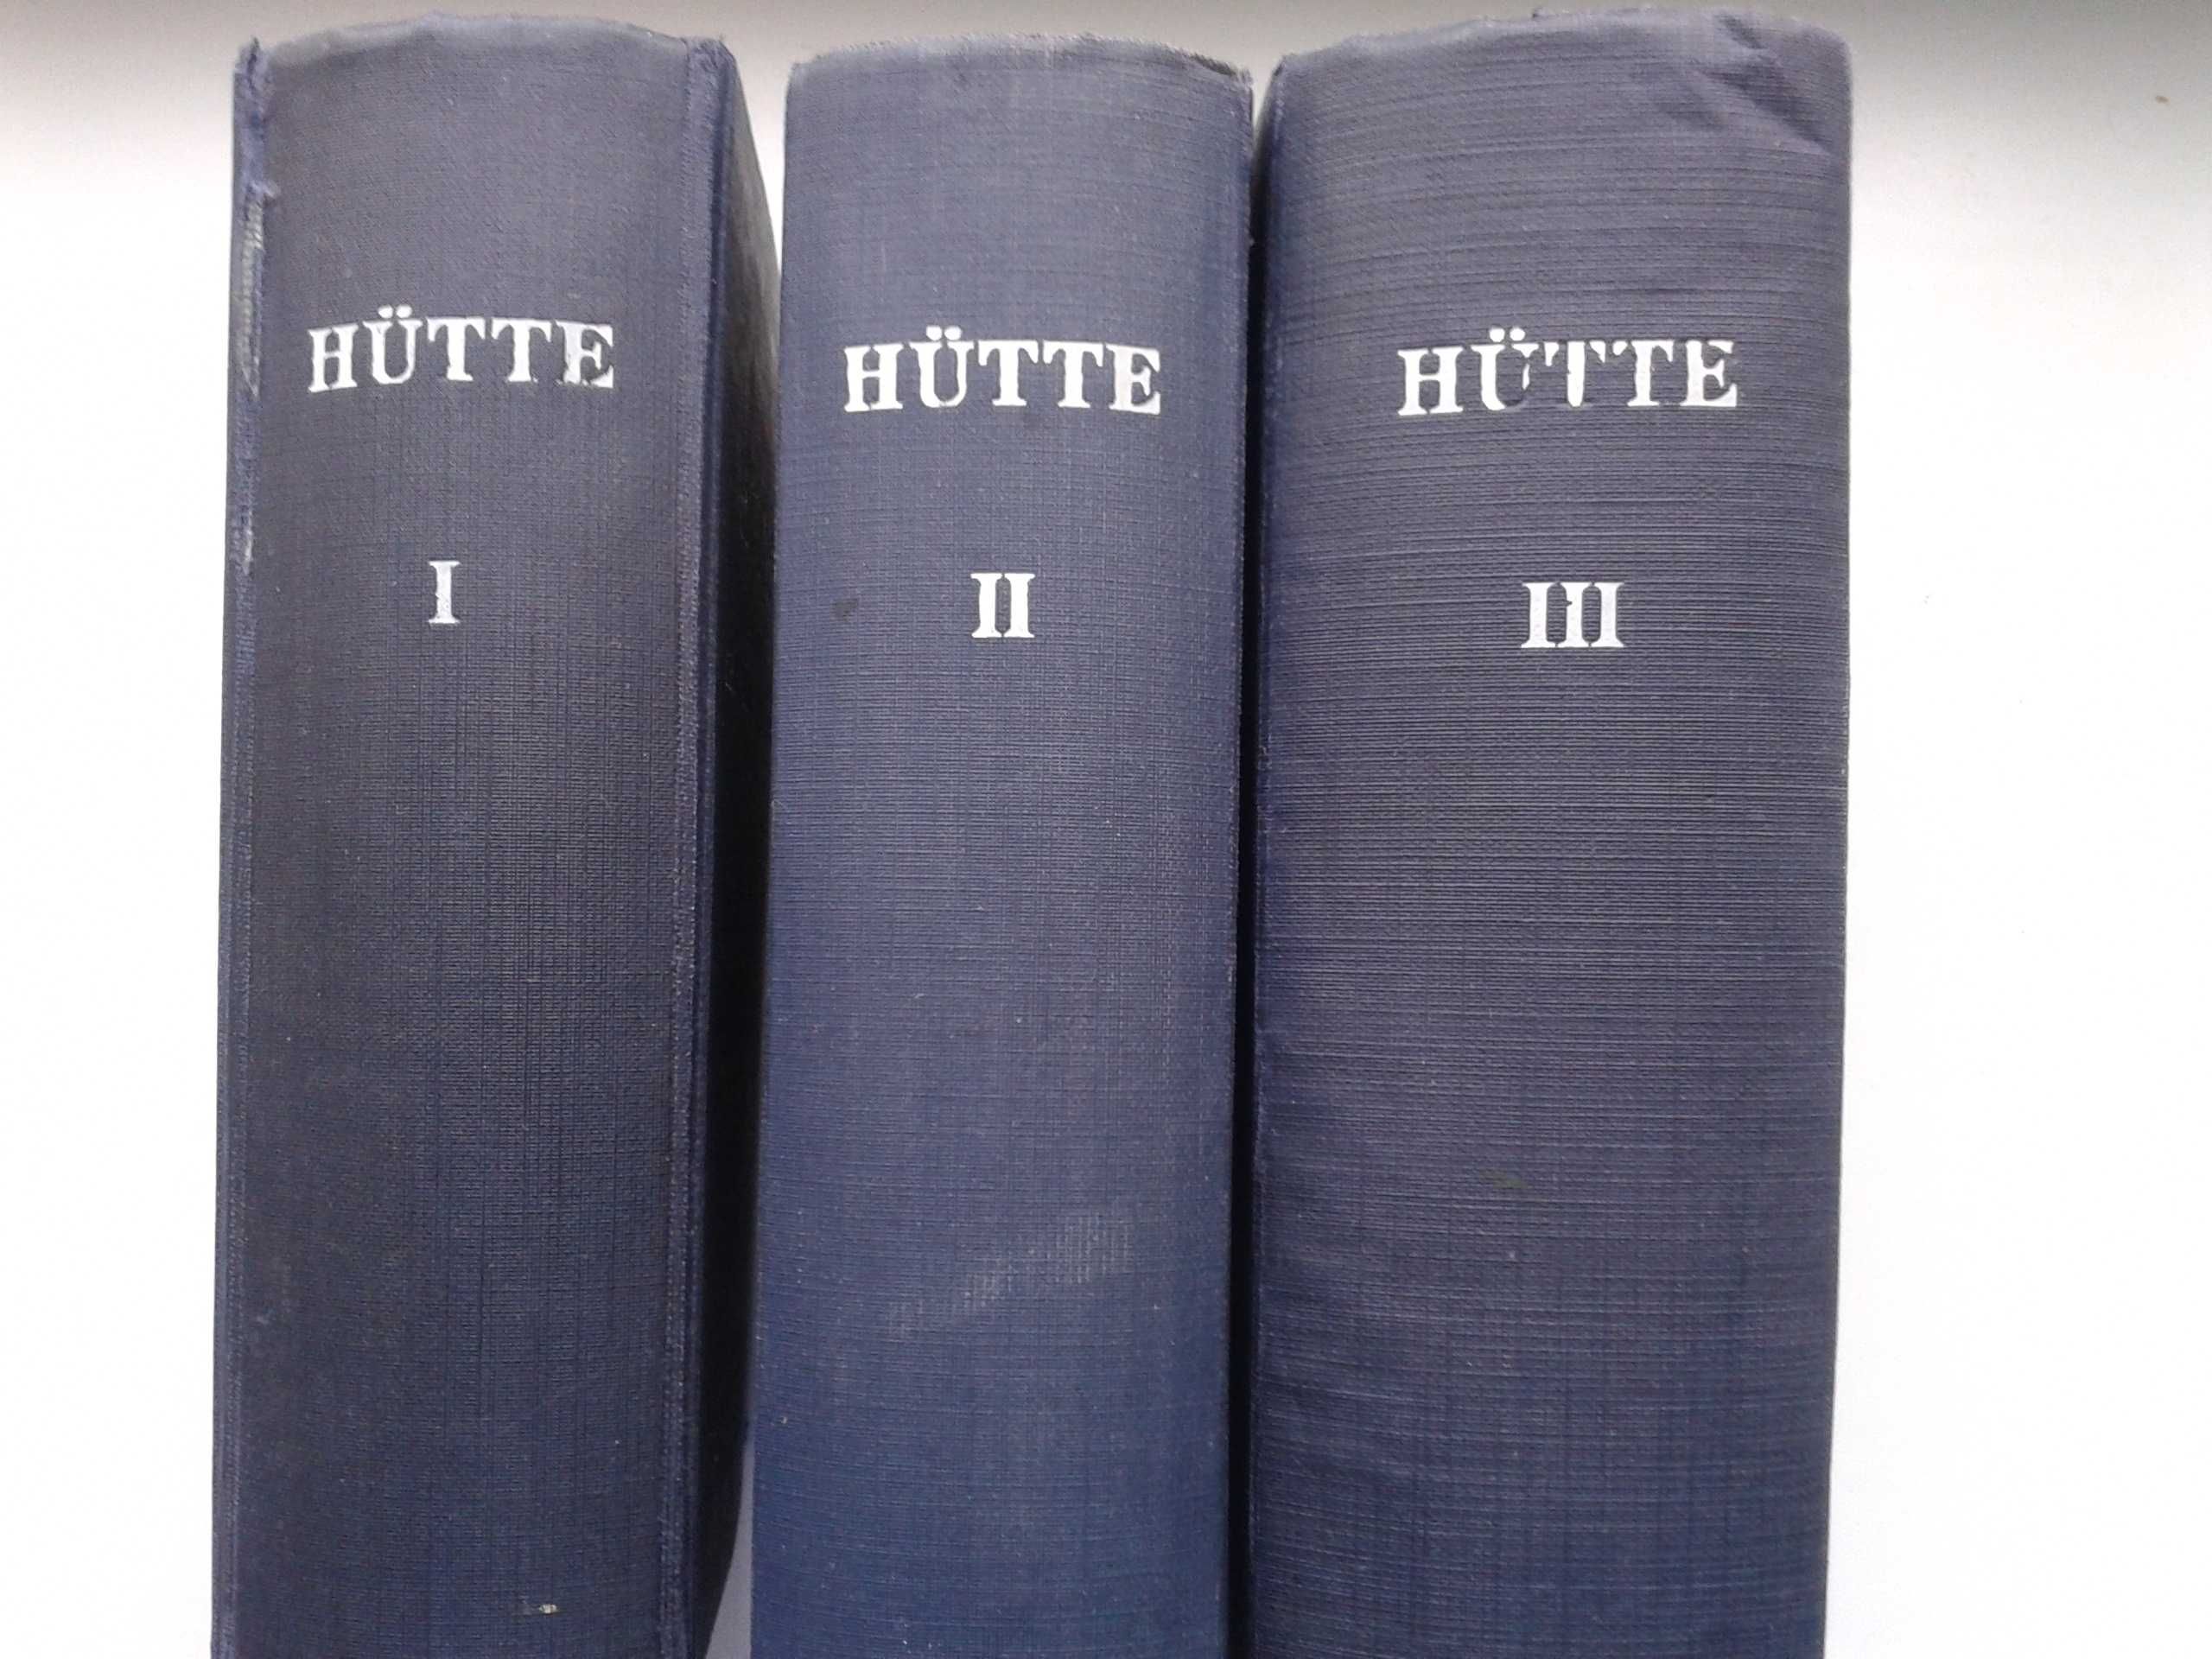 HUTTE, Справочная книга для инженеров Берлин, 1926 г – 3 тома